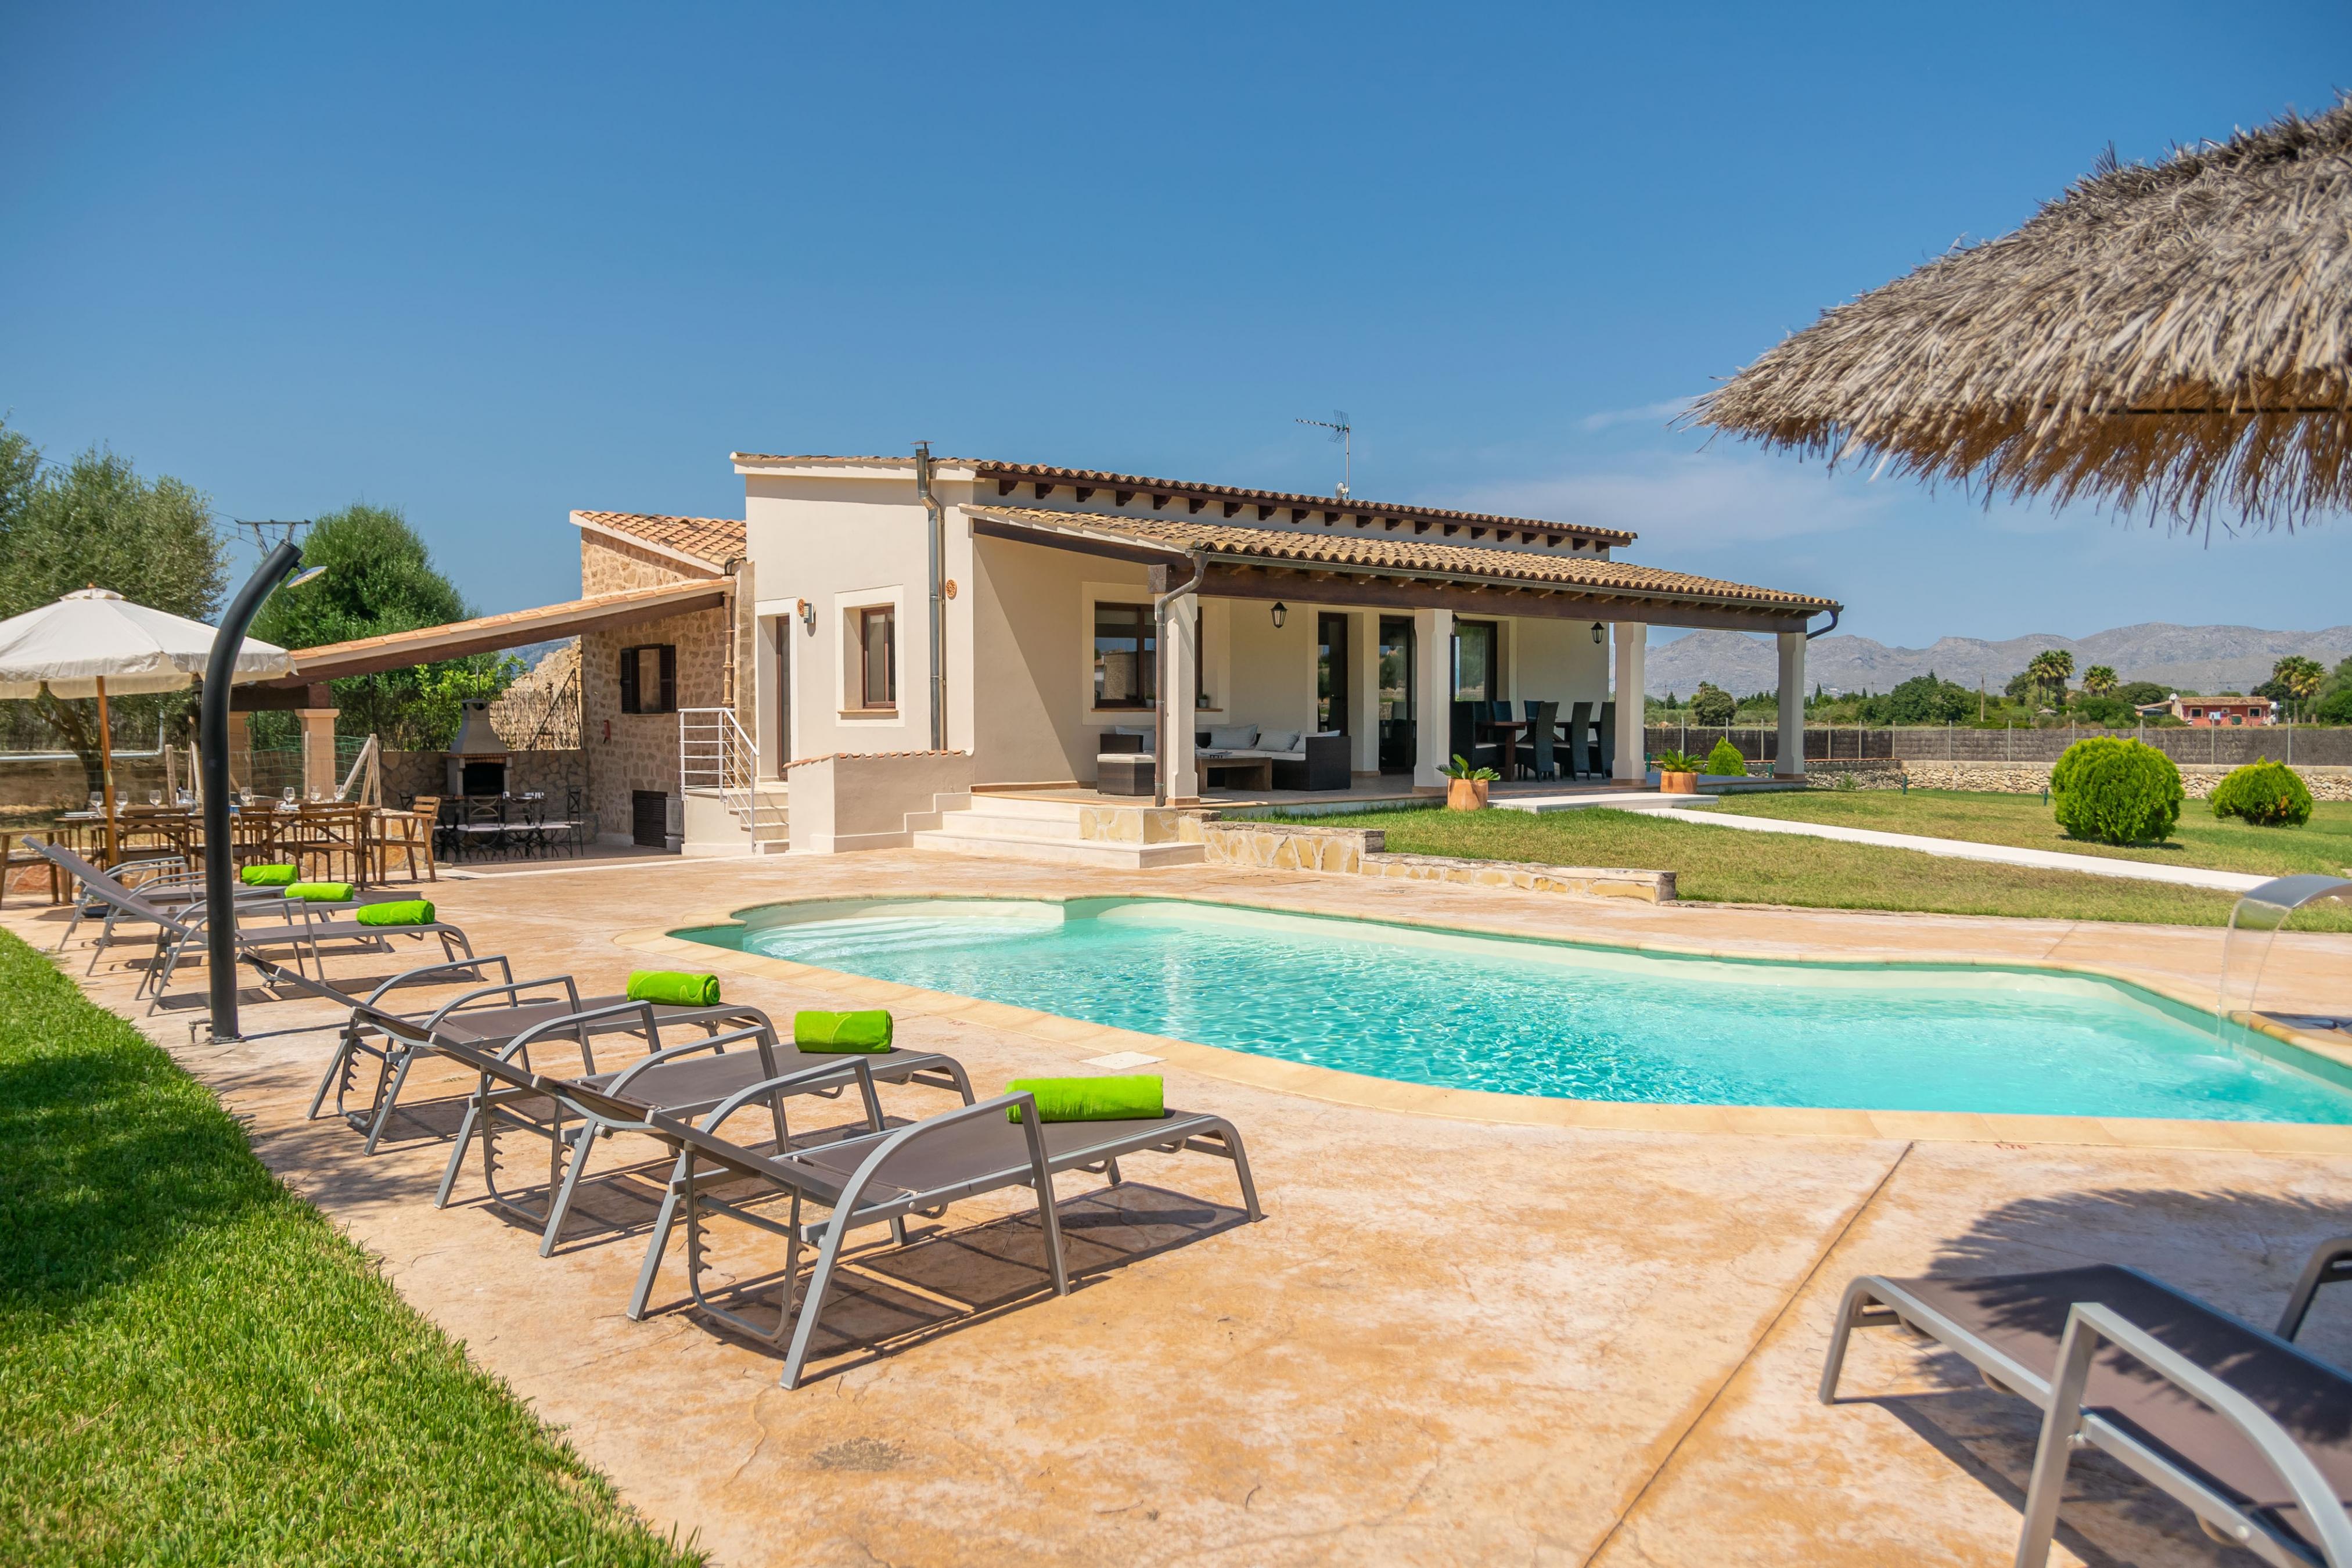 Property Image 1 - VILLA COIRA - Spectacular villa with private pool, garden and mountains views, near the beach of Puerto de